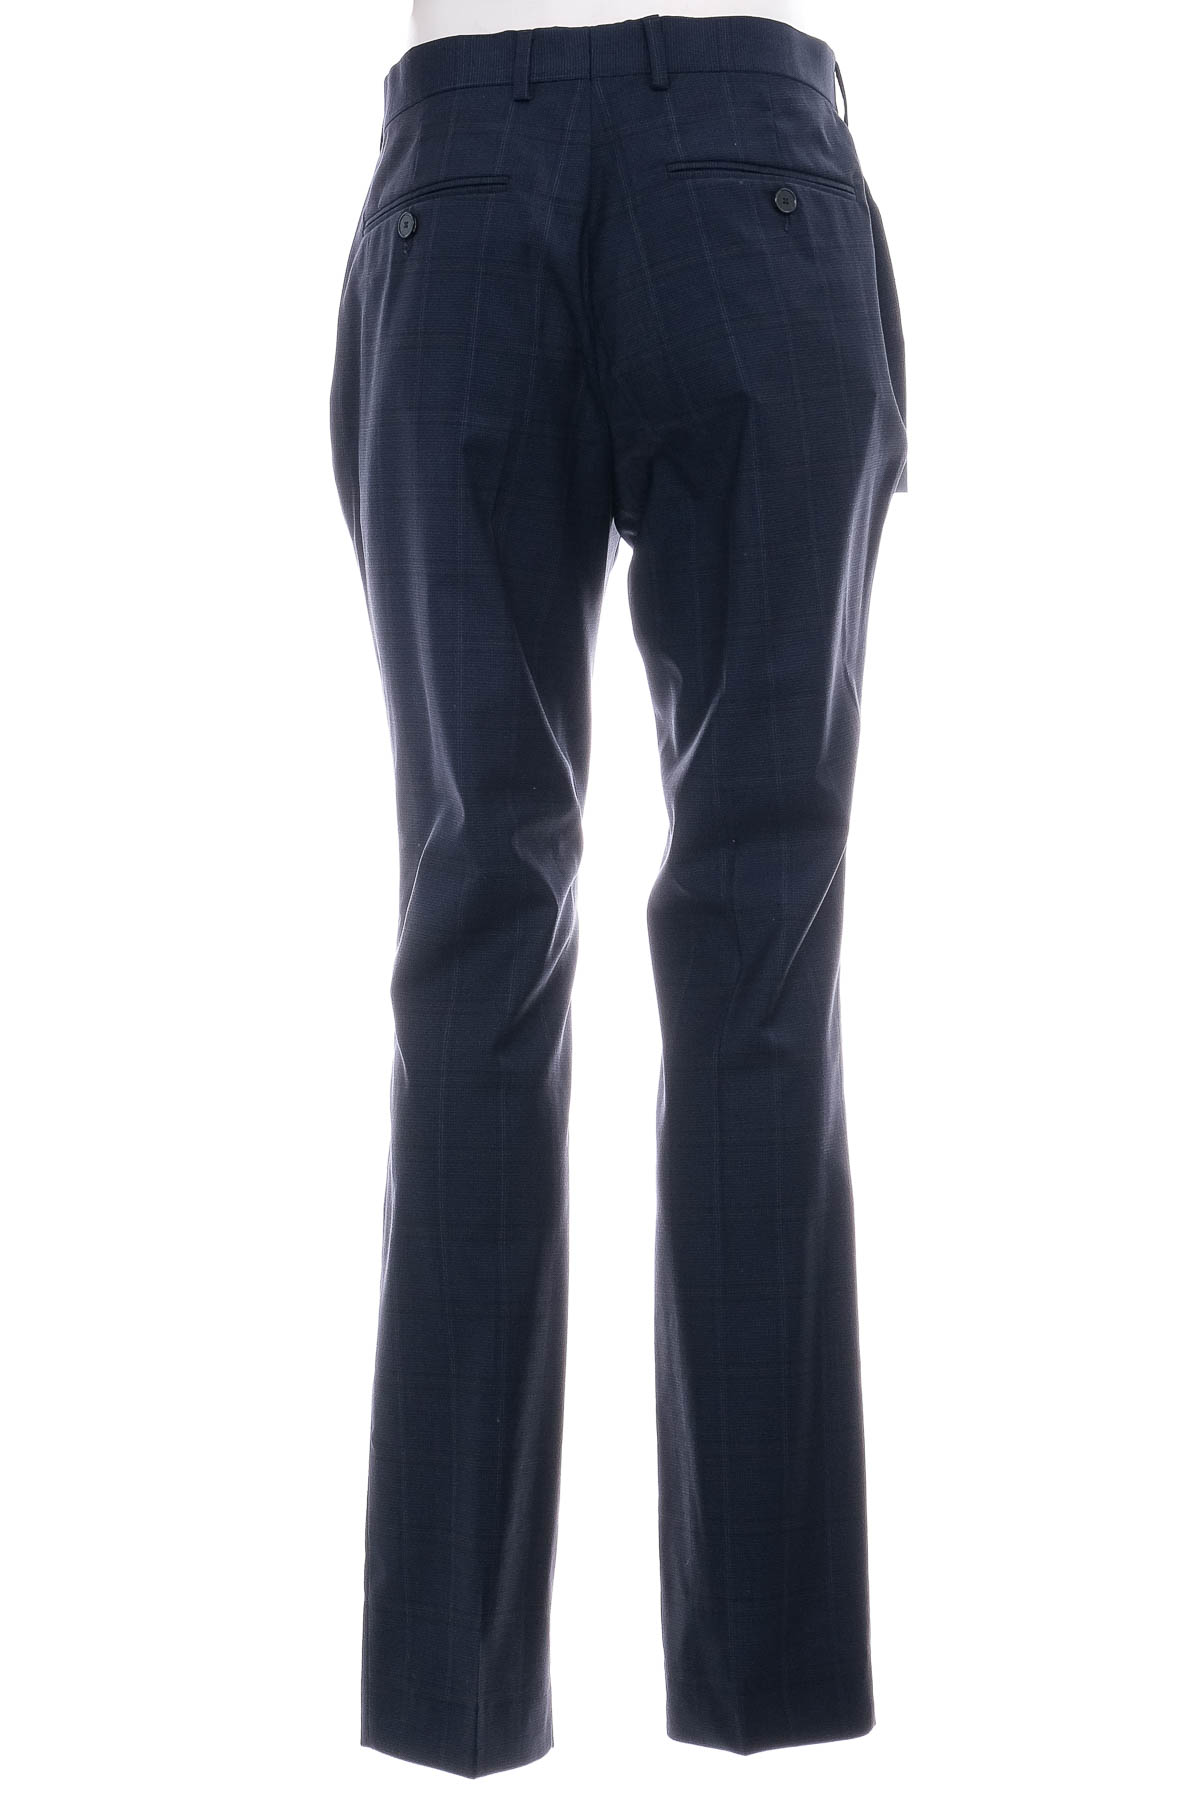 Pantalon pentru bărbați - TOM TAILOR - 1